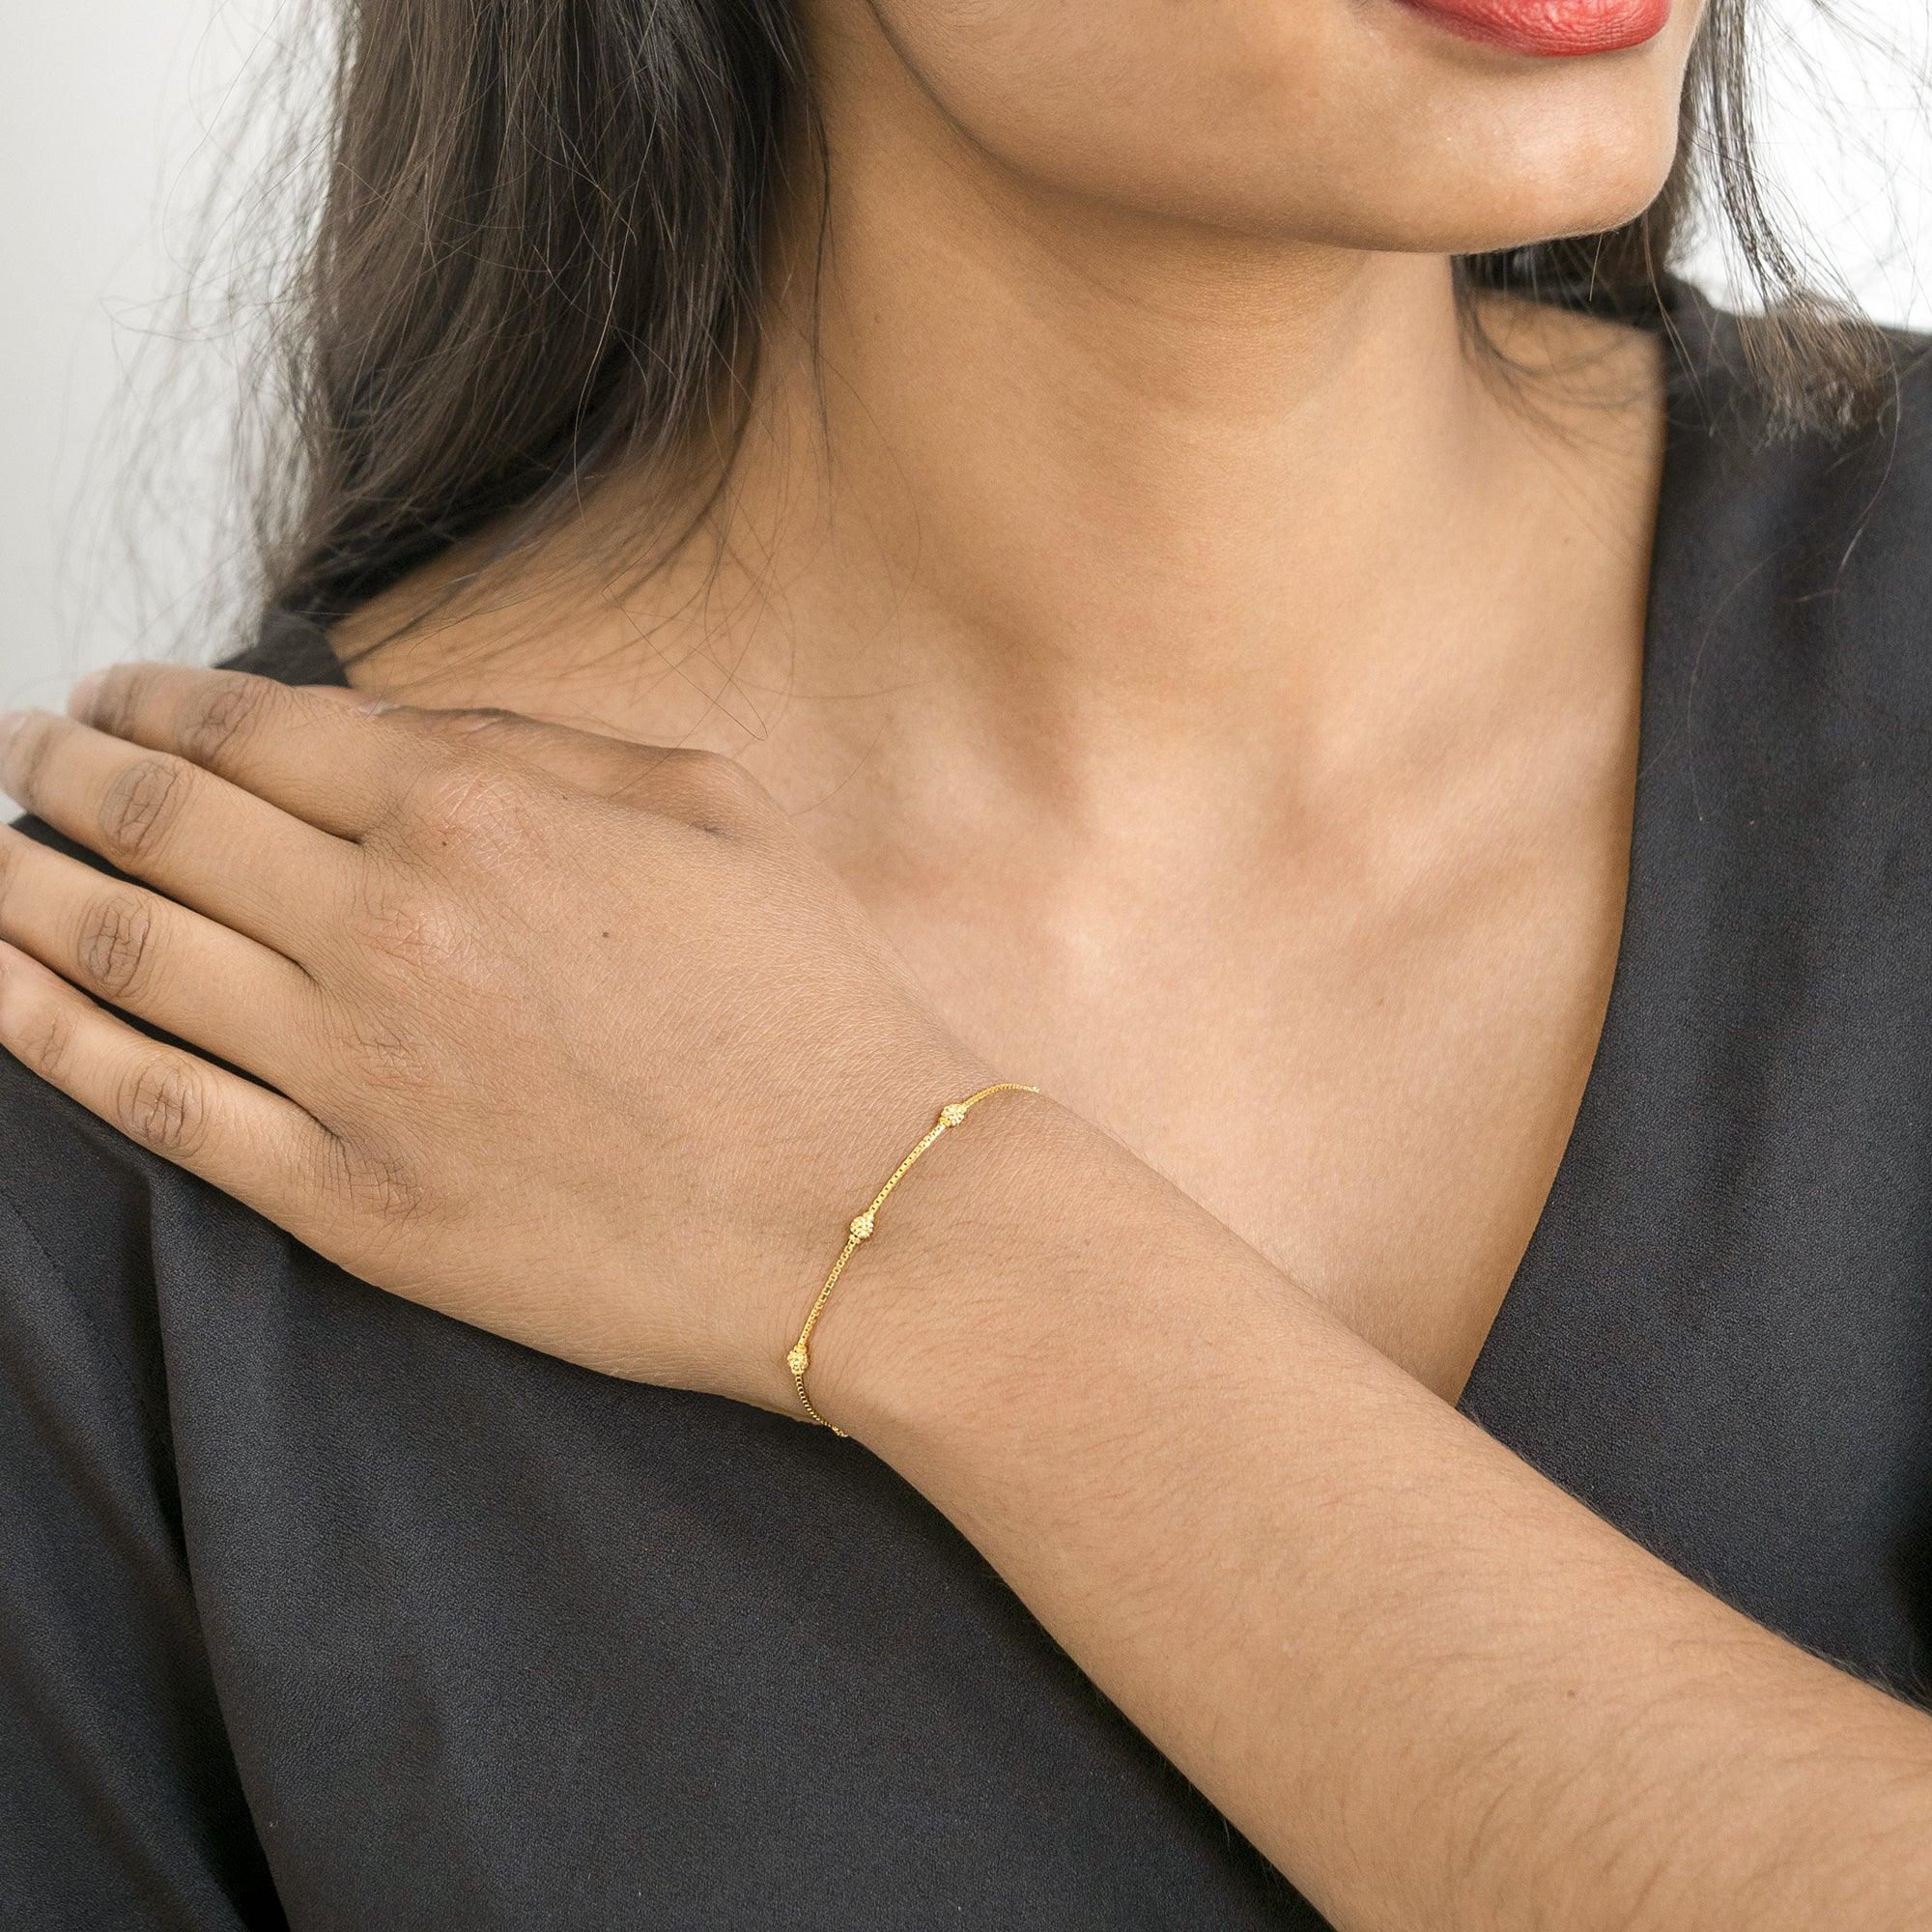 Gold Bracelet  Buy Gold Bracelets for Men Women  Girls Online  Myntra